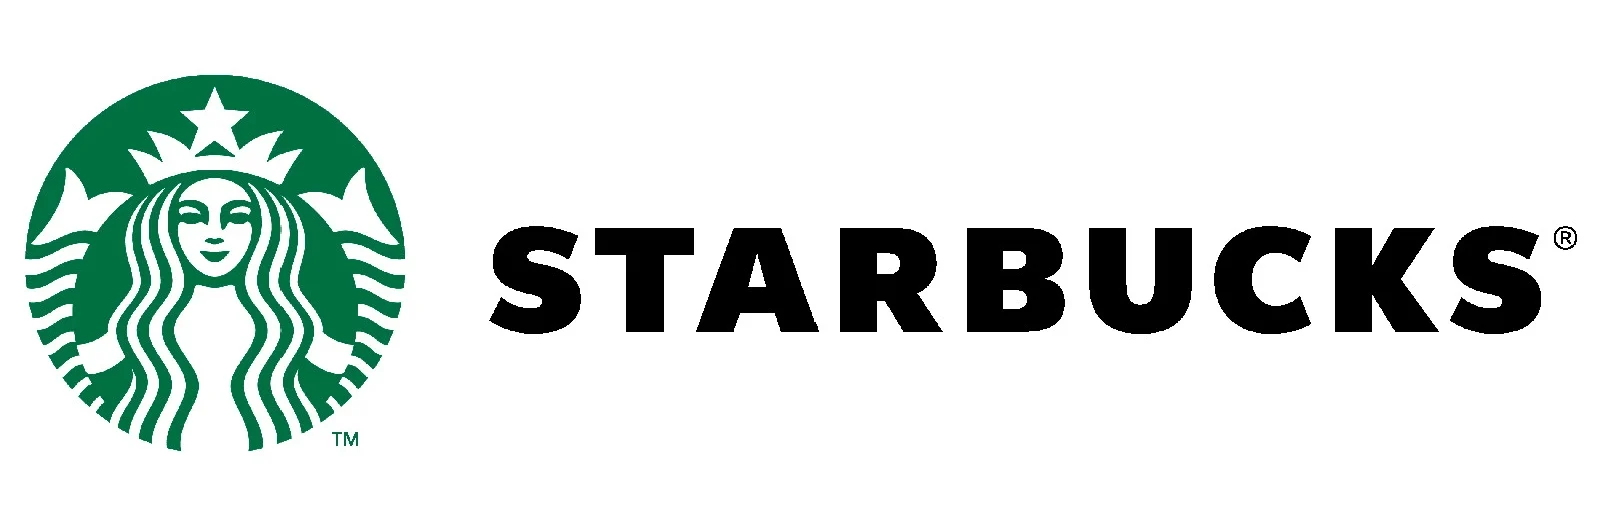 Imagen del logotipo de Starbucks, representando el ejemplo de la matriz de Ansoff que presentamos en este blog post.